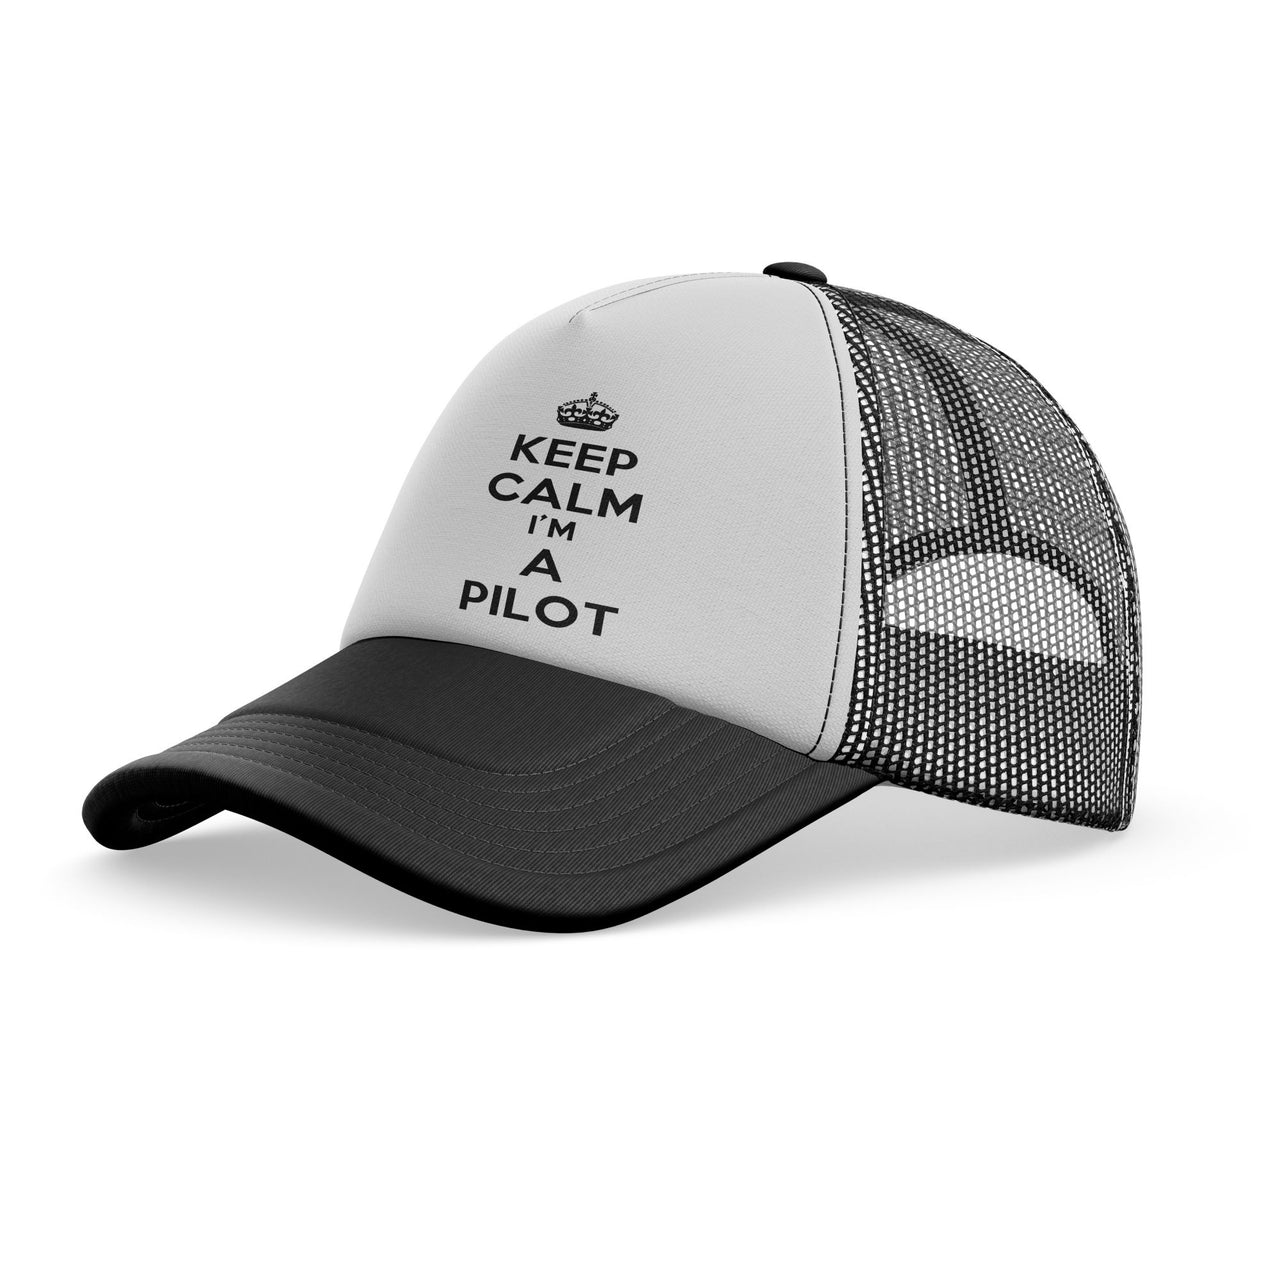 Keep Calm I'm a Pilot Designed Trucker Caps & Hats